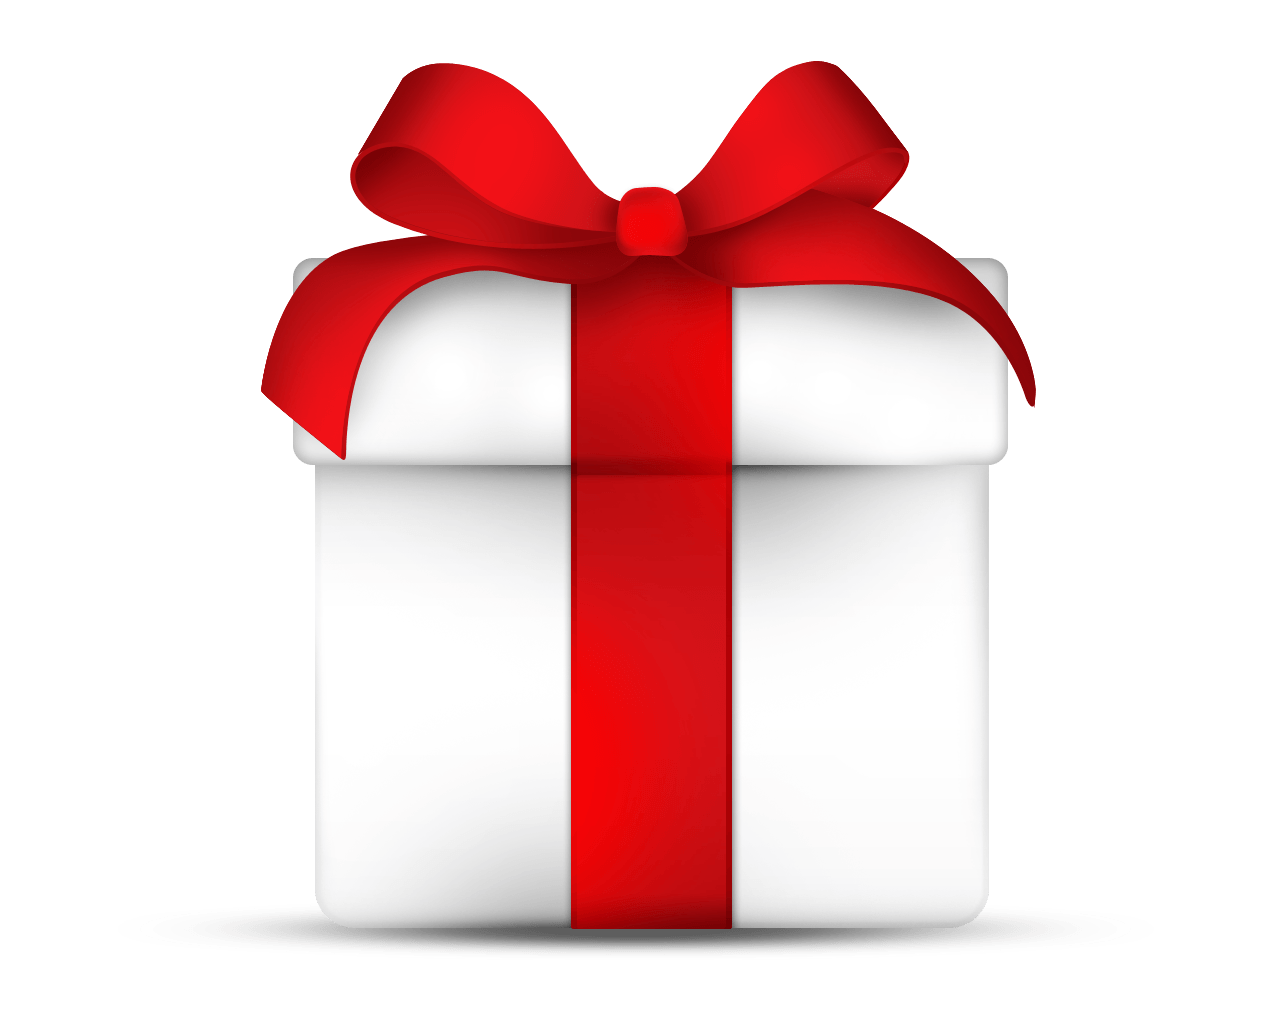 Download Gift Box Png Image HQ PNG Image FreePNGImg